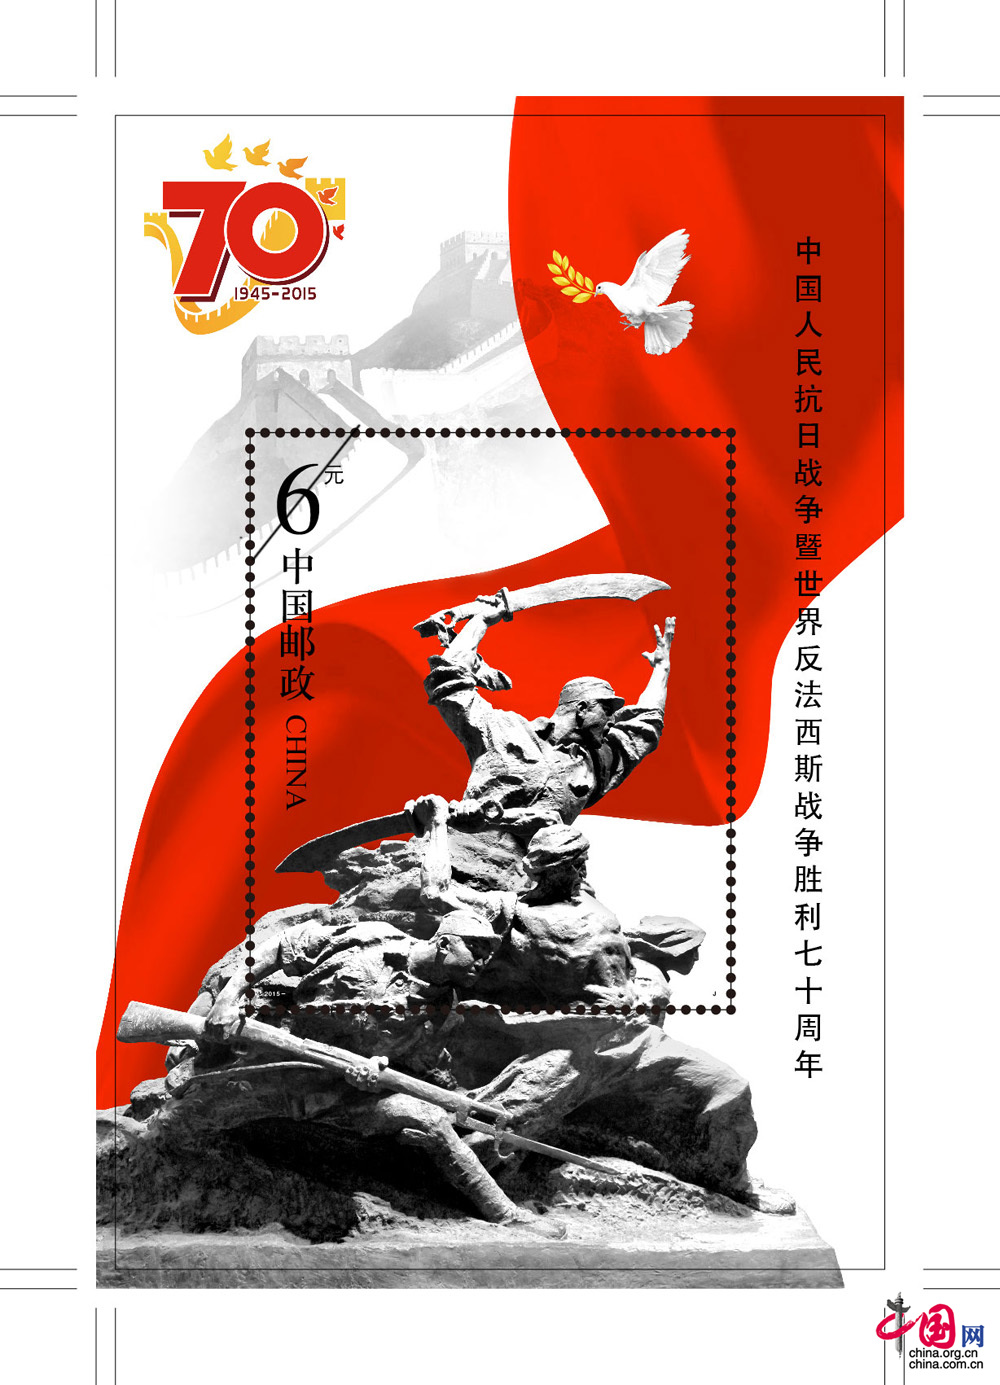 抗戰勝利70週年紀念郵票設計圖案首次公佈